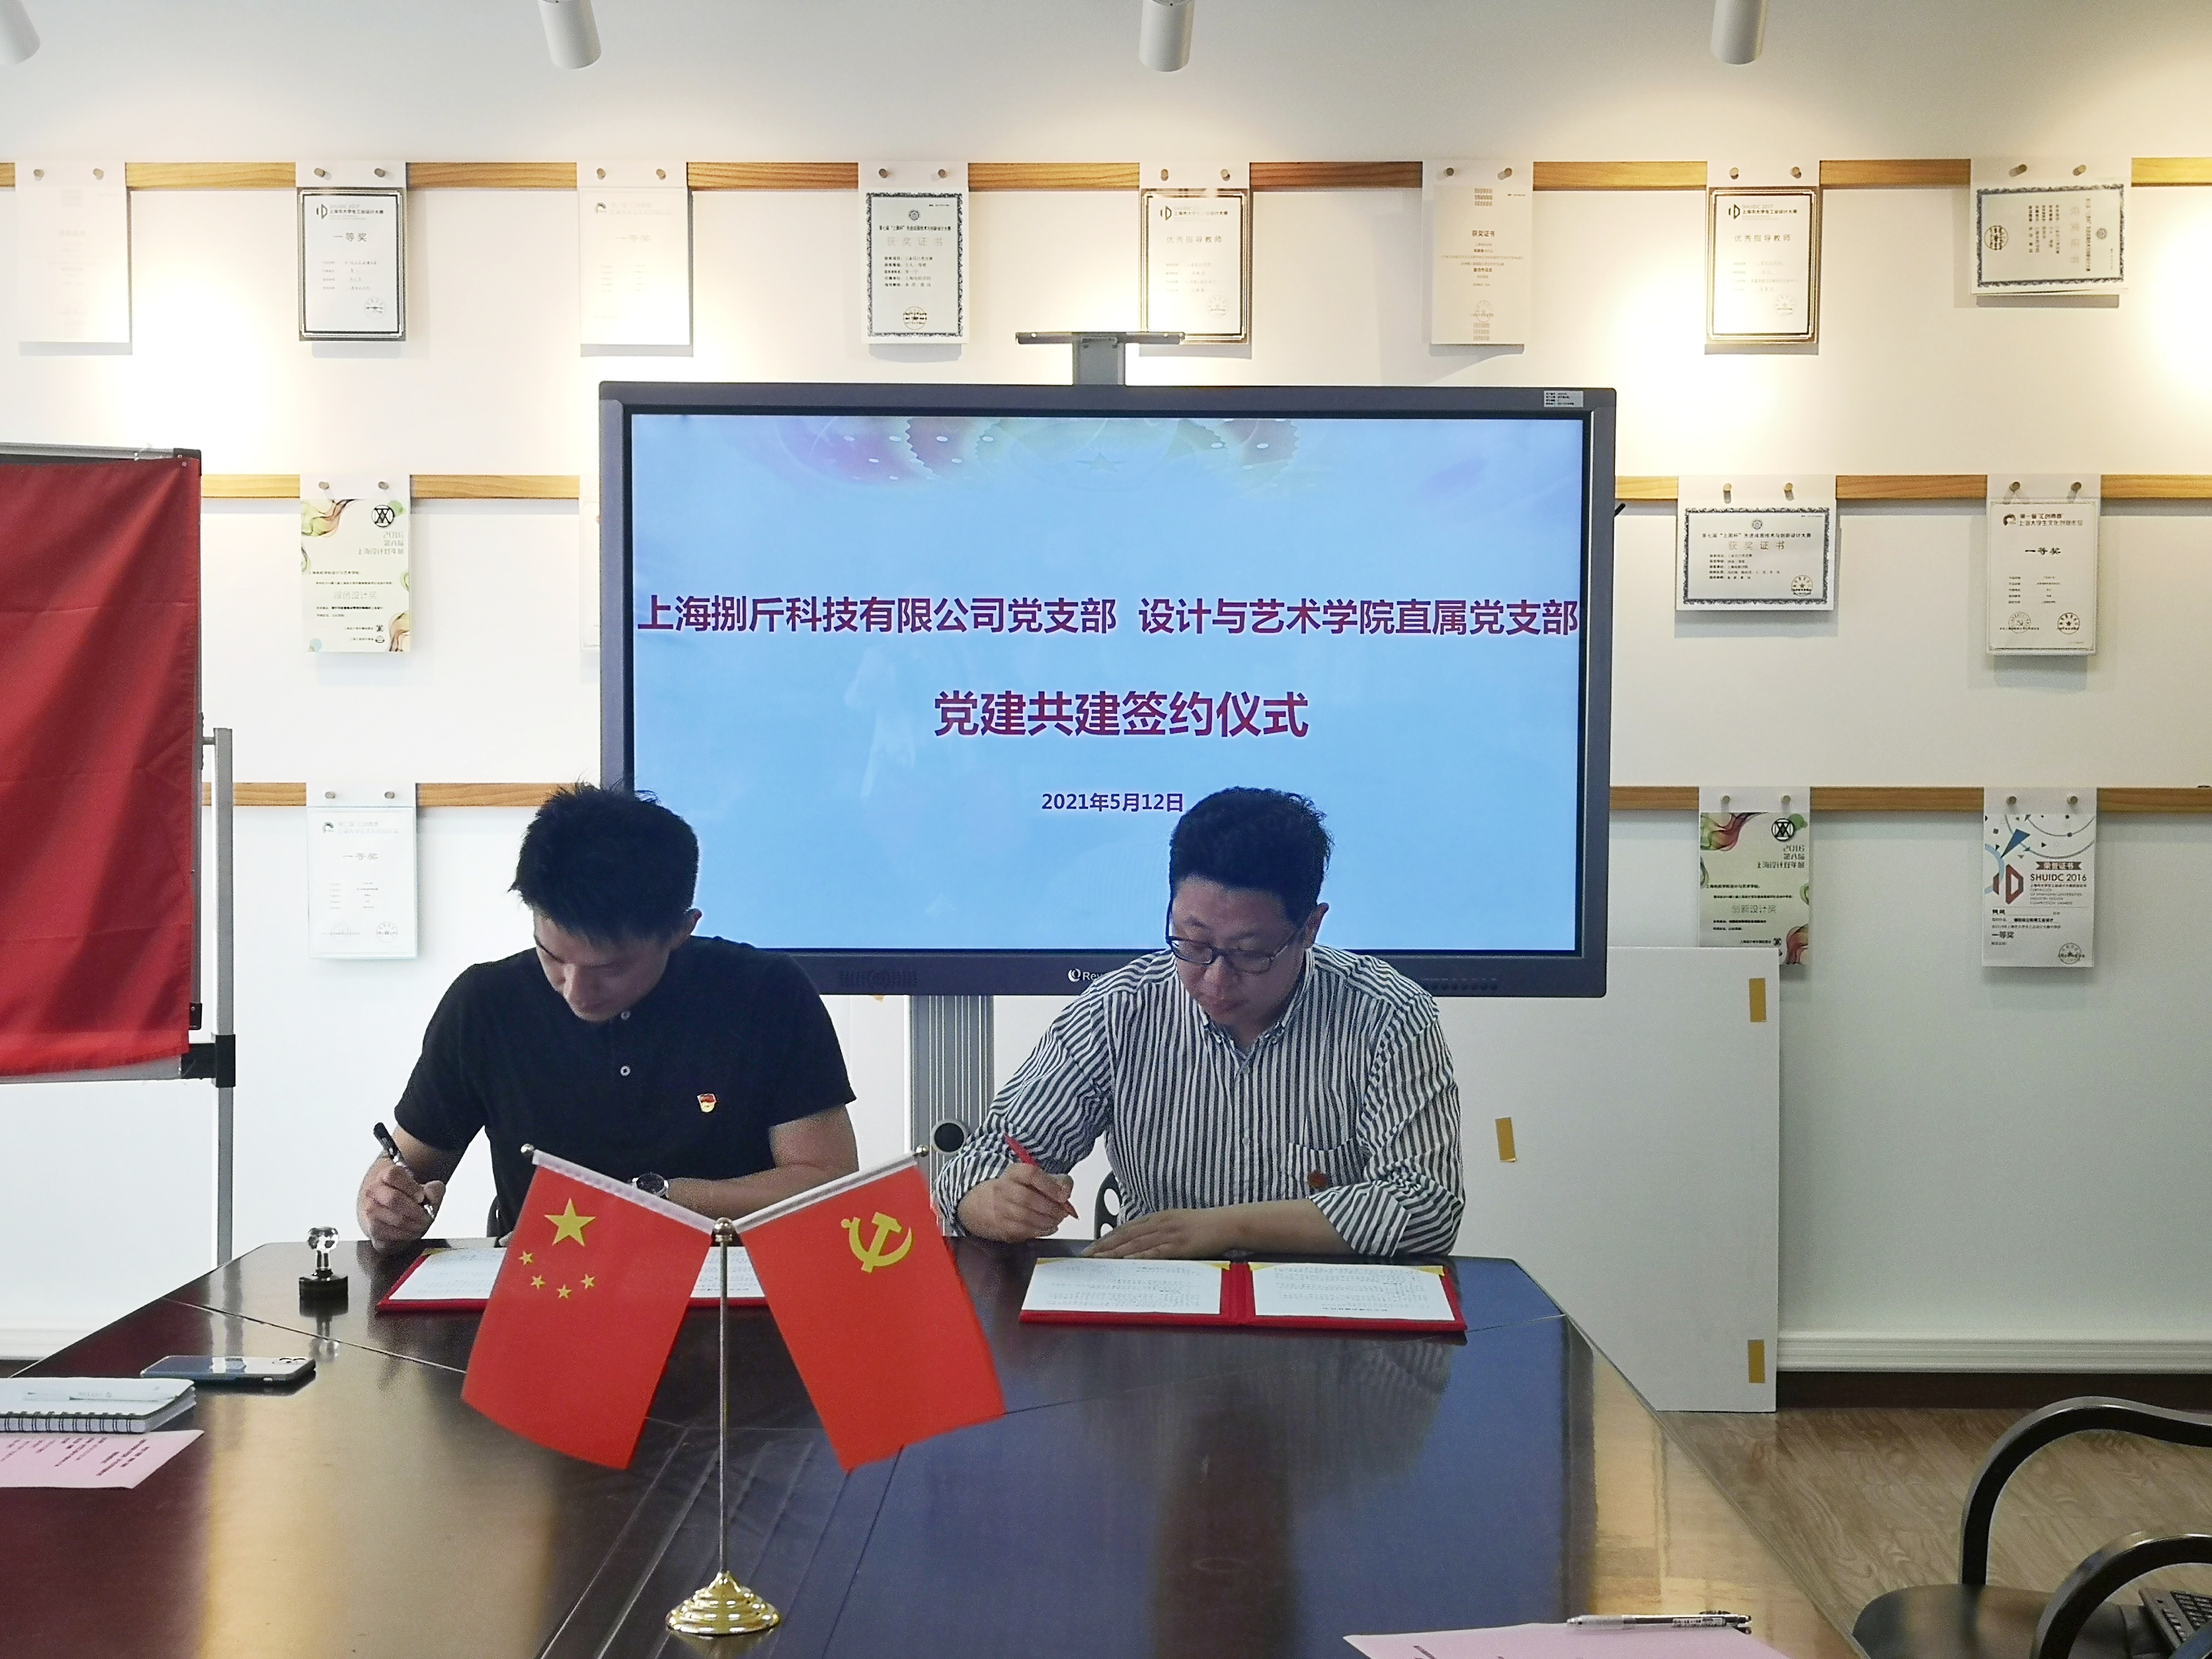 5.12 上海捌斤科技有限公司与设计与艺术学院直属党支部开展党建共建签约6.jpg